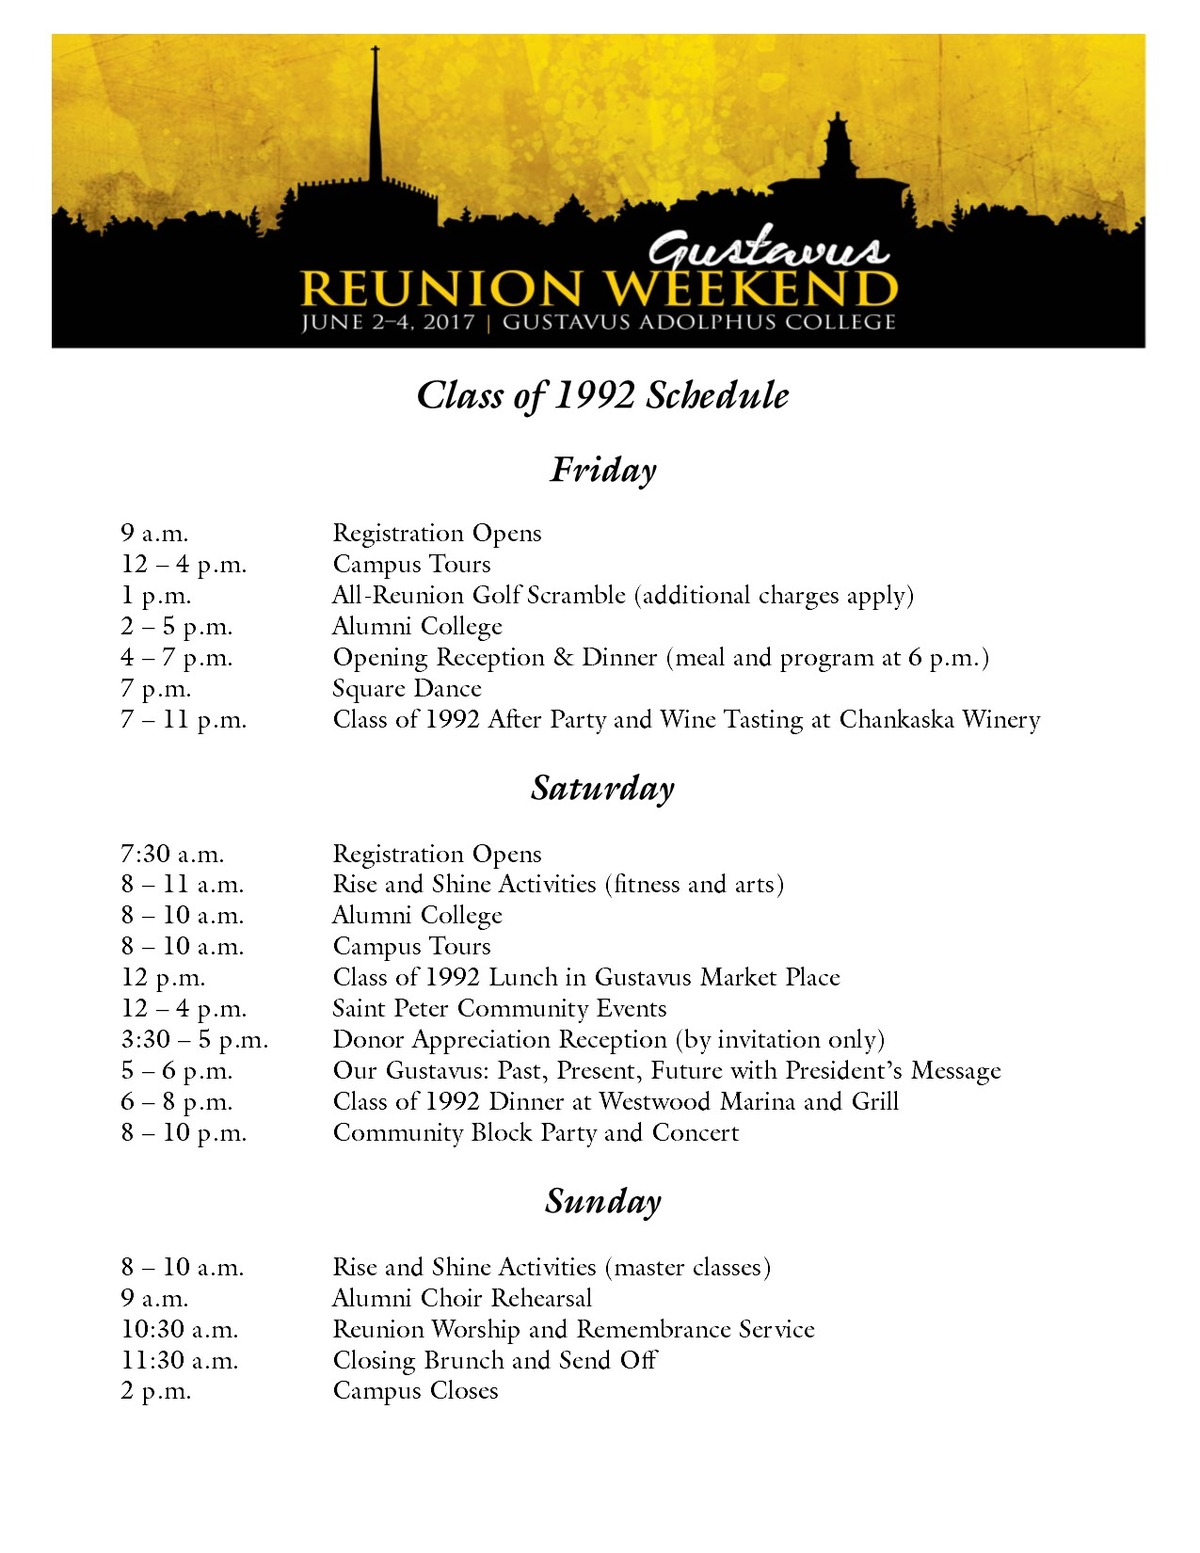 Class of 1992 Reunion Weekend Schedule